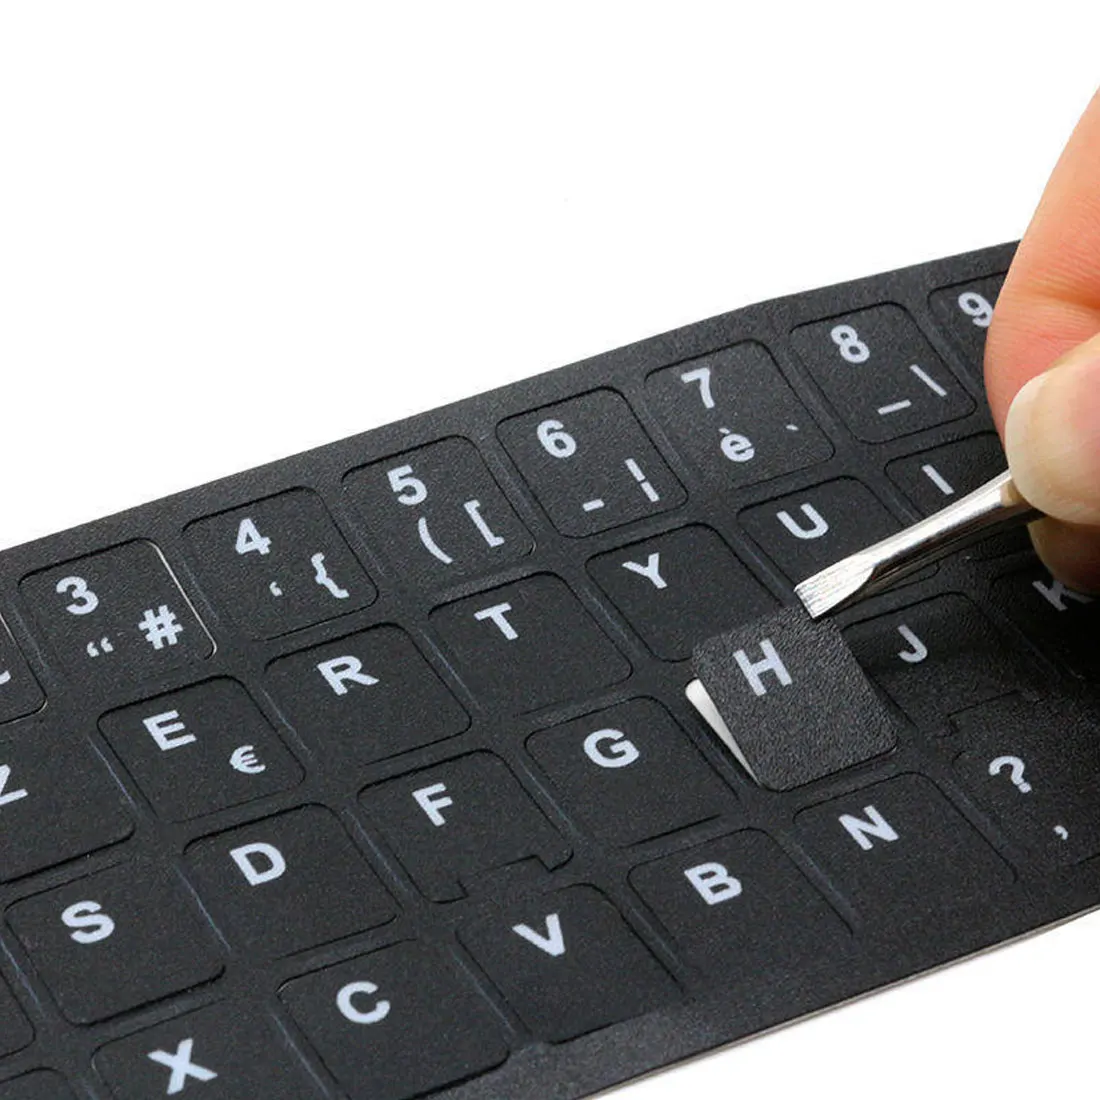 Клавиатура Наклейка английская испанская португальский буква Алфавит раскладка наклейка s для ноутбука Настольный компьютер клавиатура